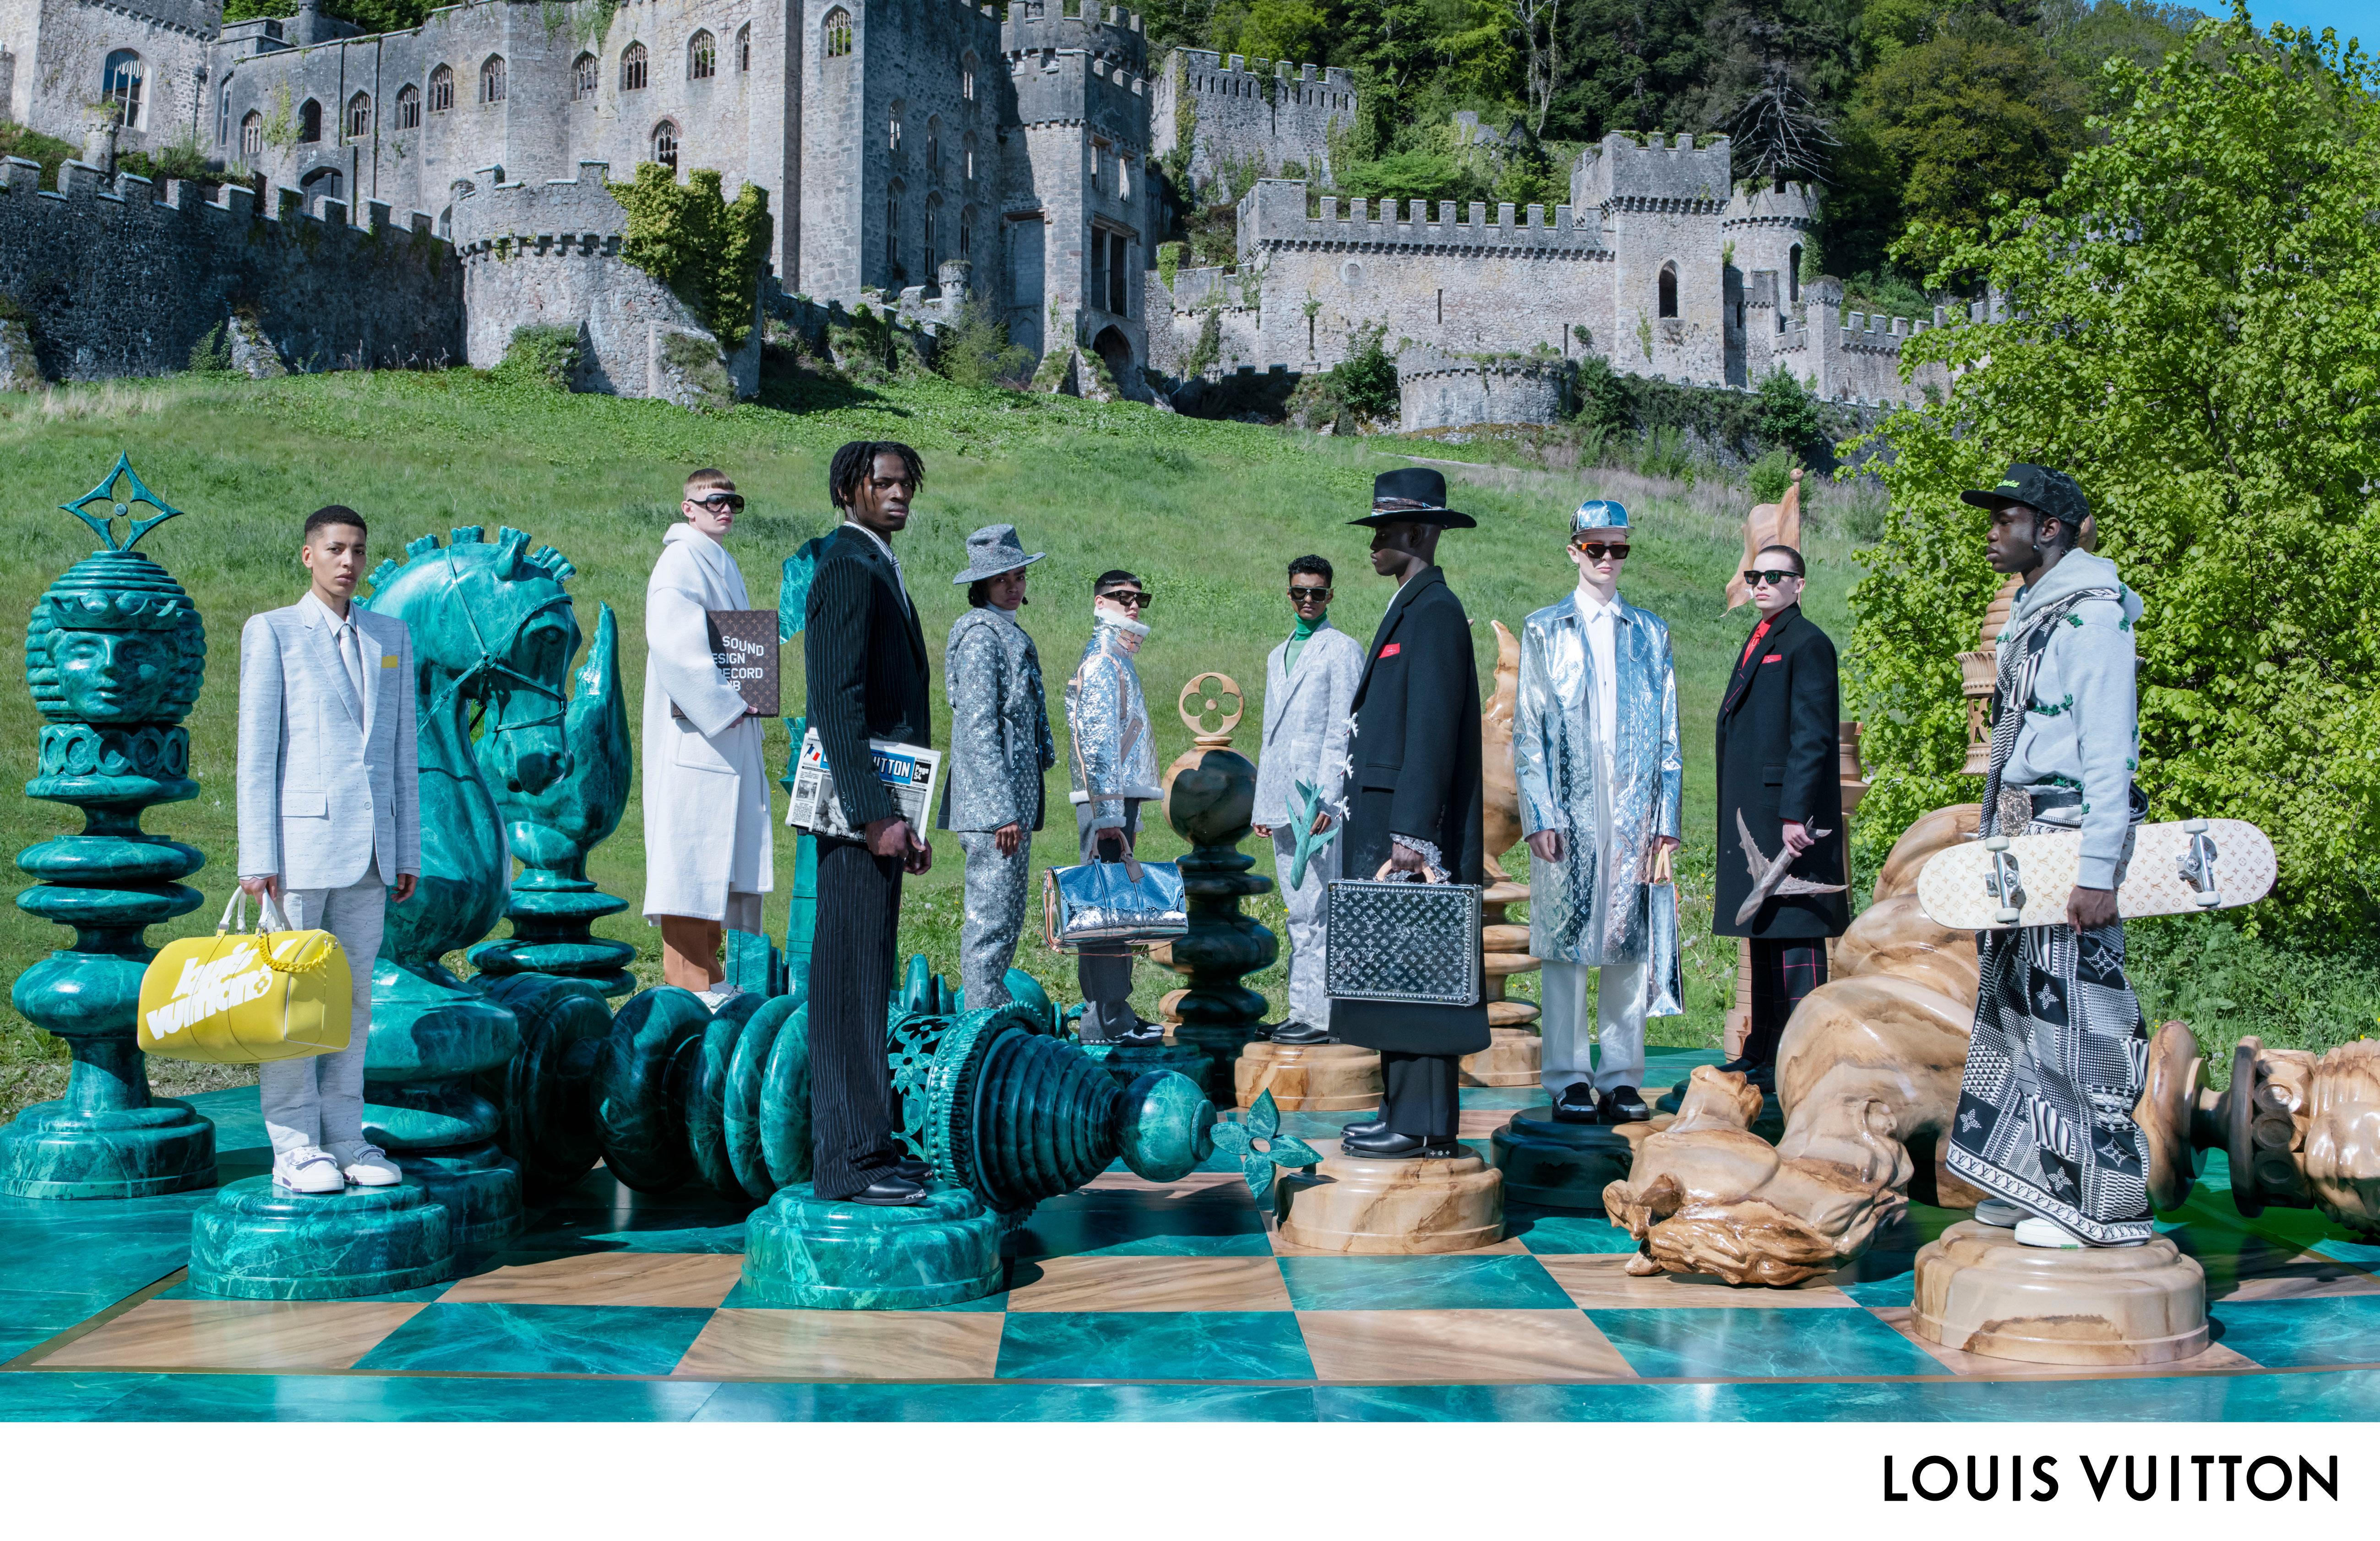 Louis Vuitton Summer 2021 - Be Good Studios